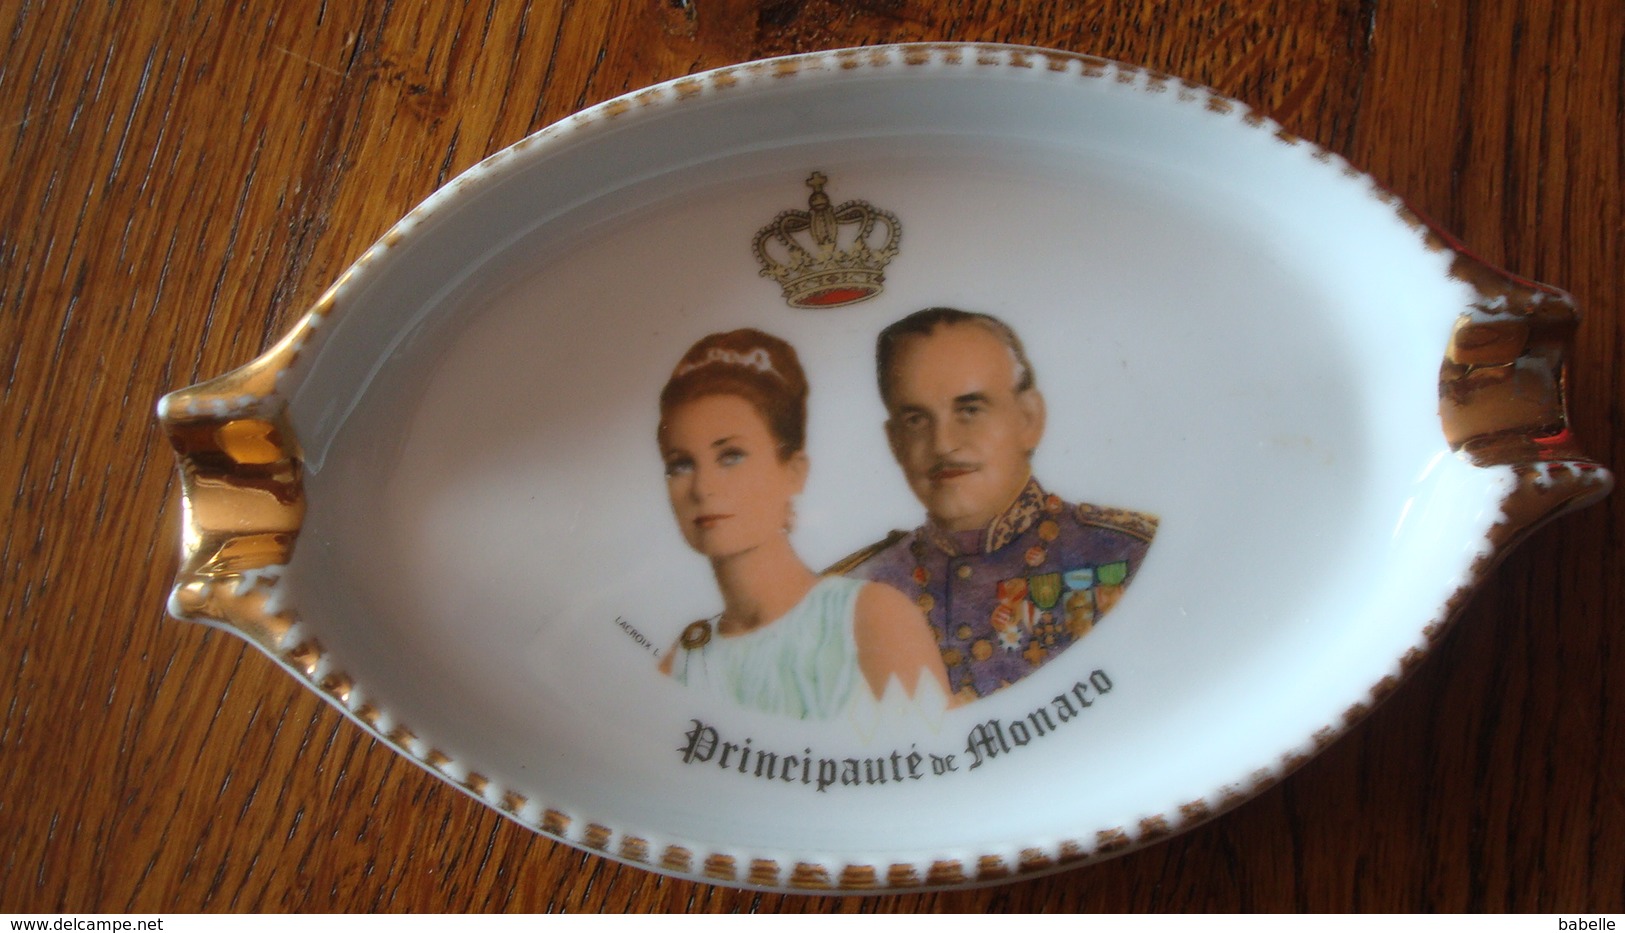 Cendrier Principauté De Monaco - Grace Kelly Et Le Prince Rainier - Porcelain